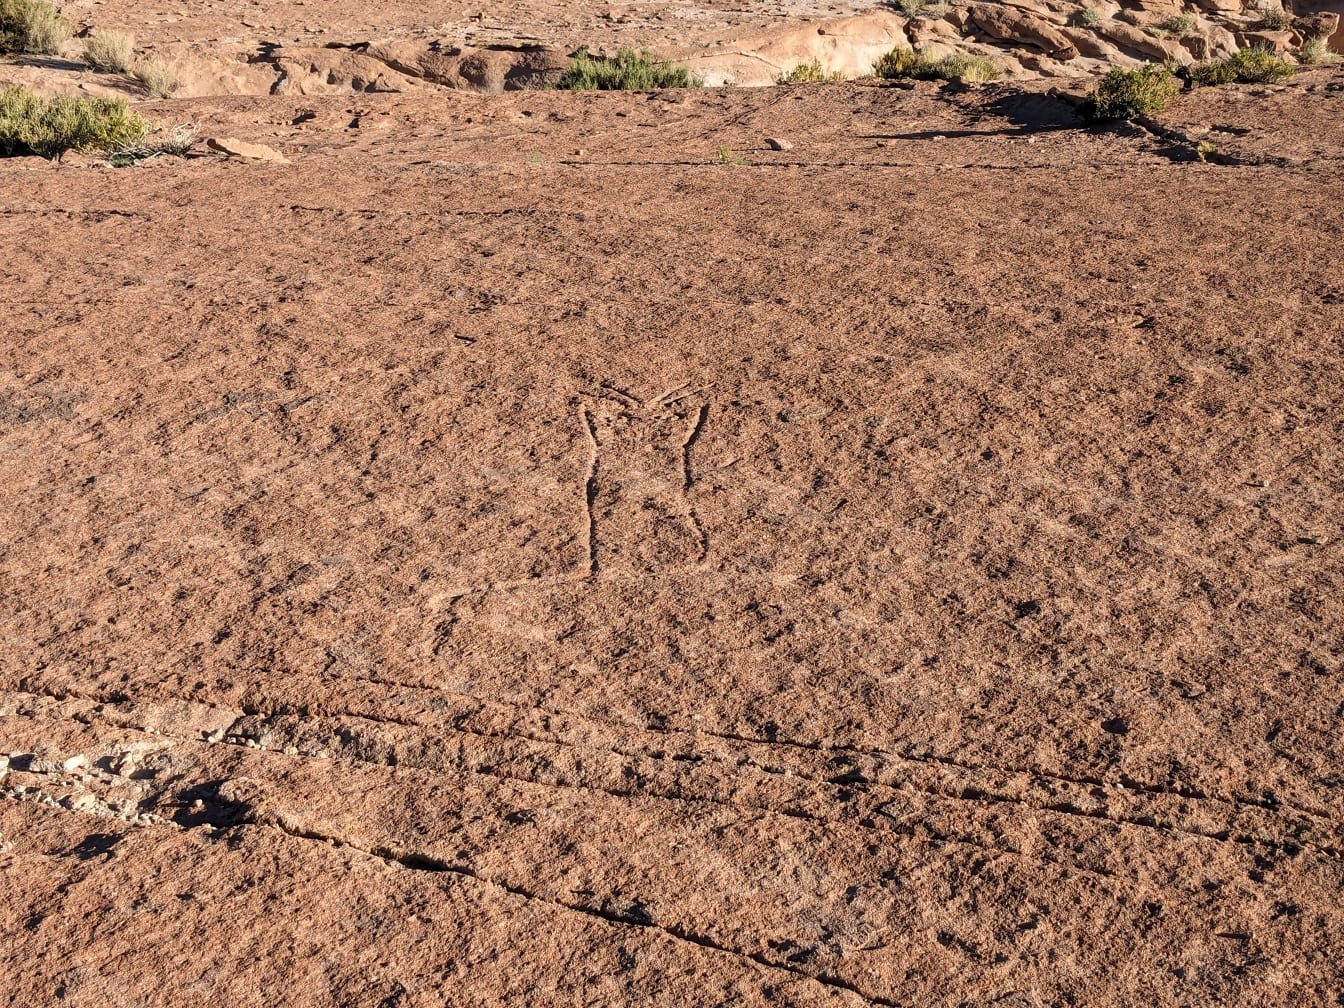 Geschliffene Felszeichnungen in der Wüste ähnlich den Nazca-Linien